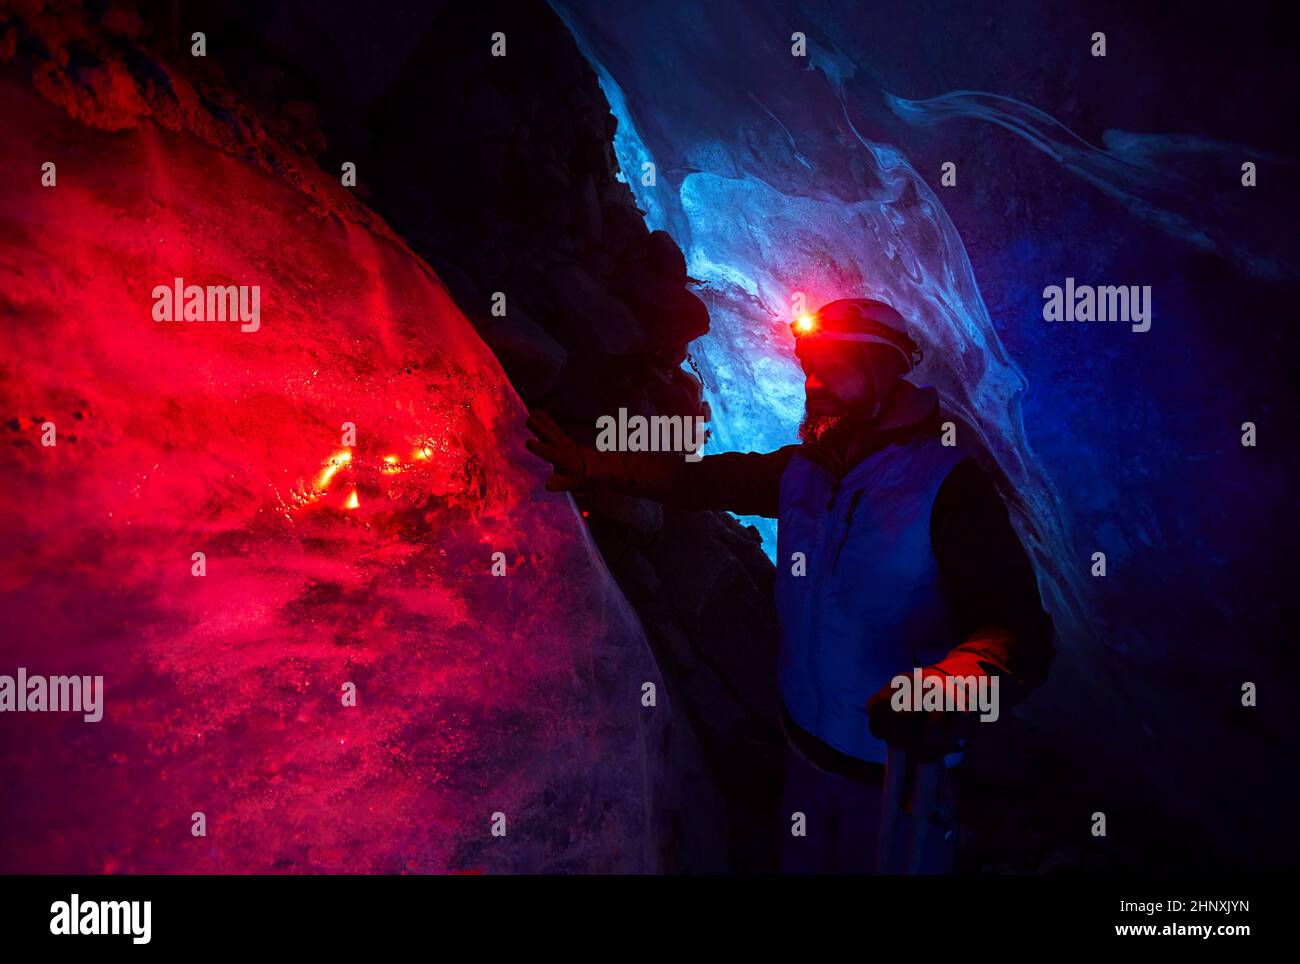 Alpinista con barba en casco con faro rojo brillante en profunda cueva de hielo glacial con luces azules explorar glaciar de montaña de invierno en Kazajstán Foto de stock